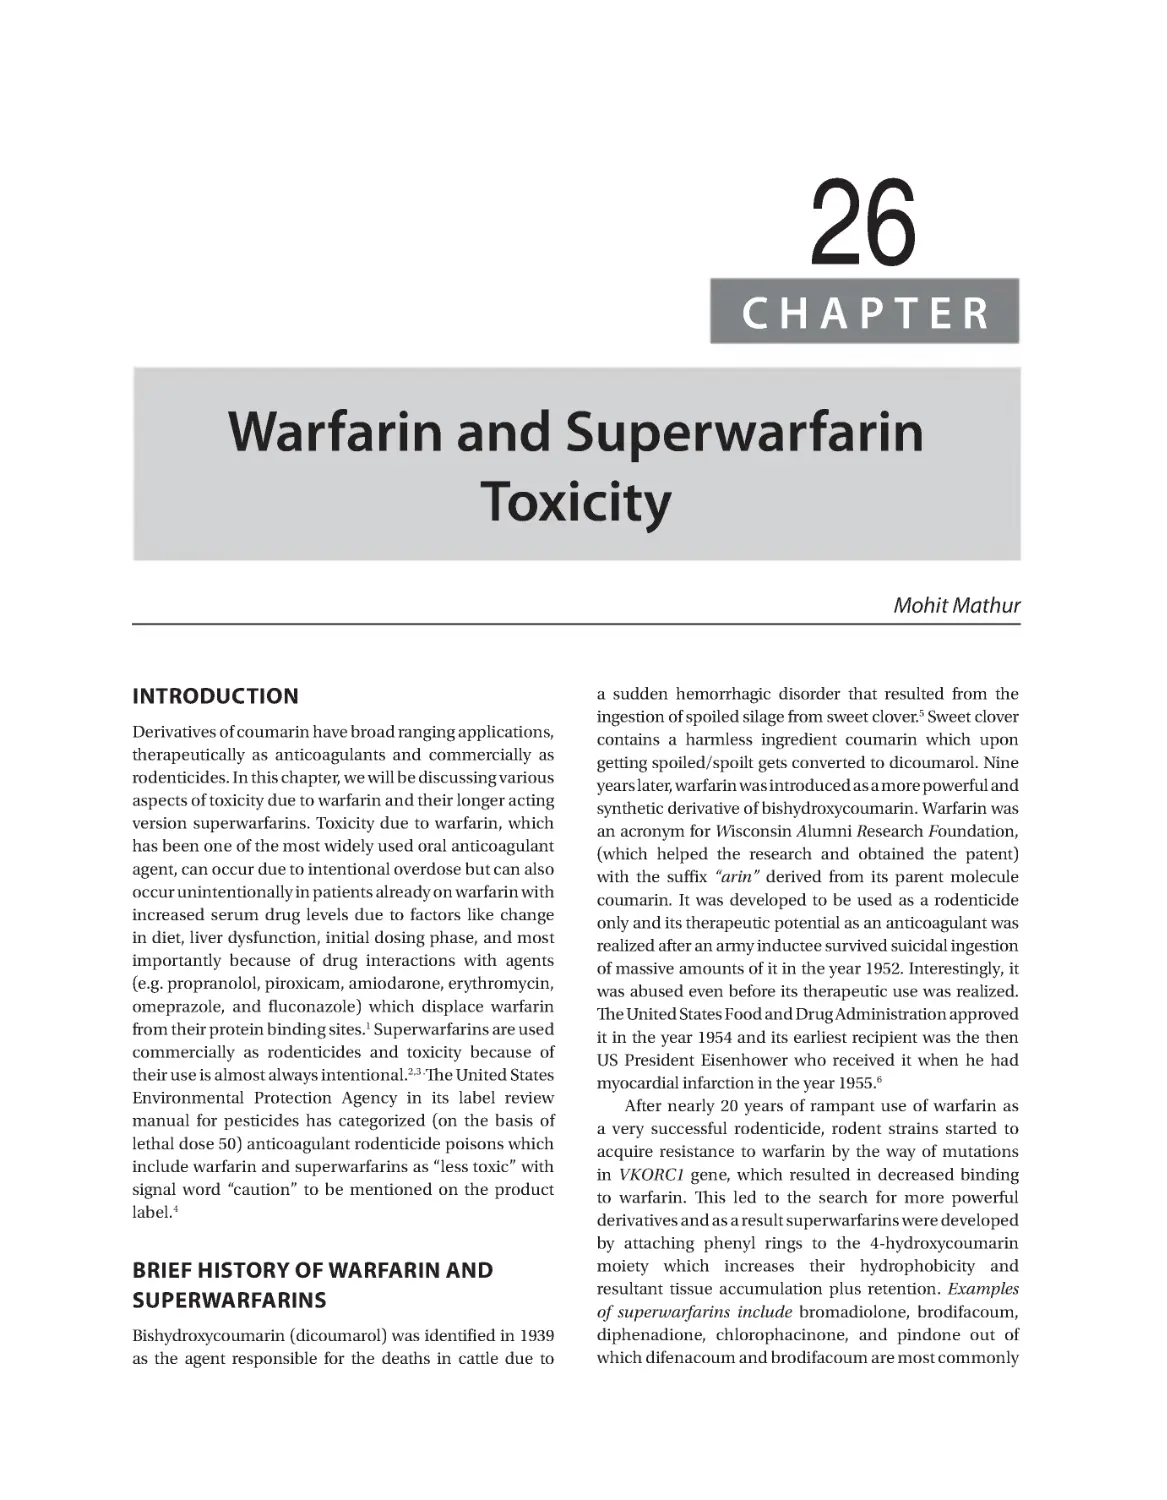 Chapter 26: Warfarin and Superwarfarin Toxicity